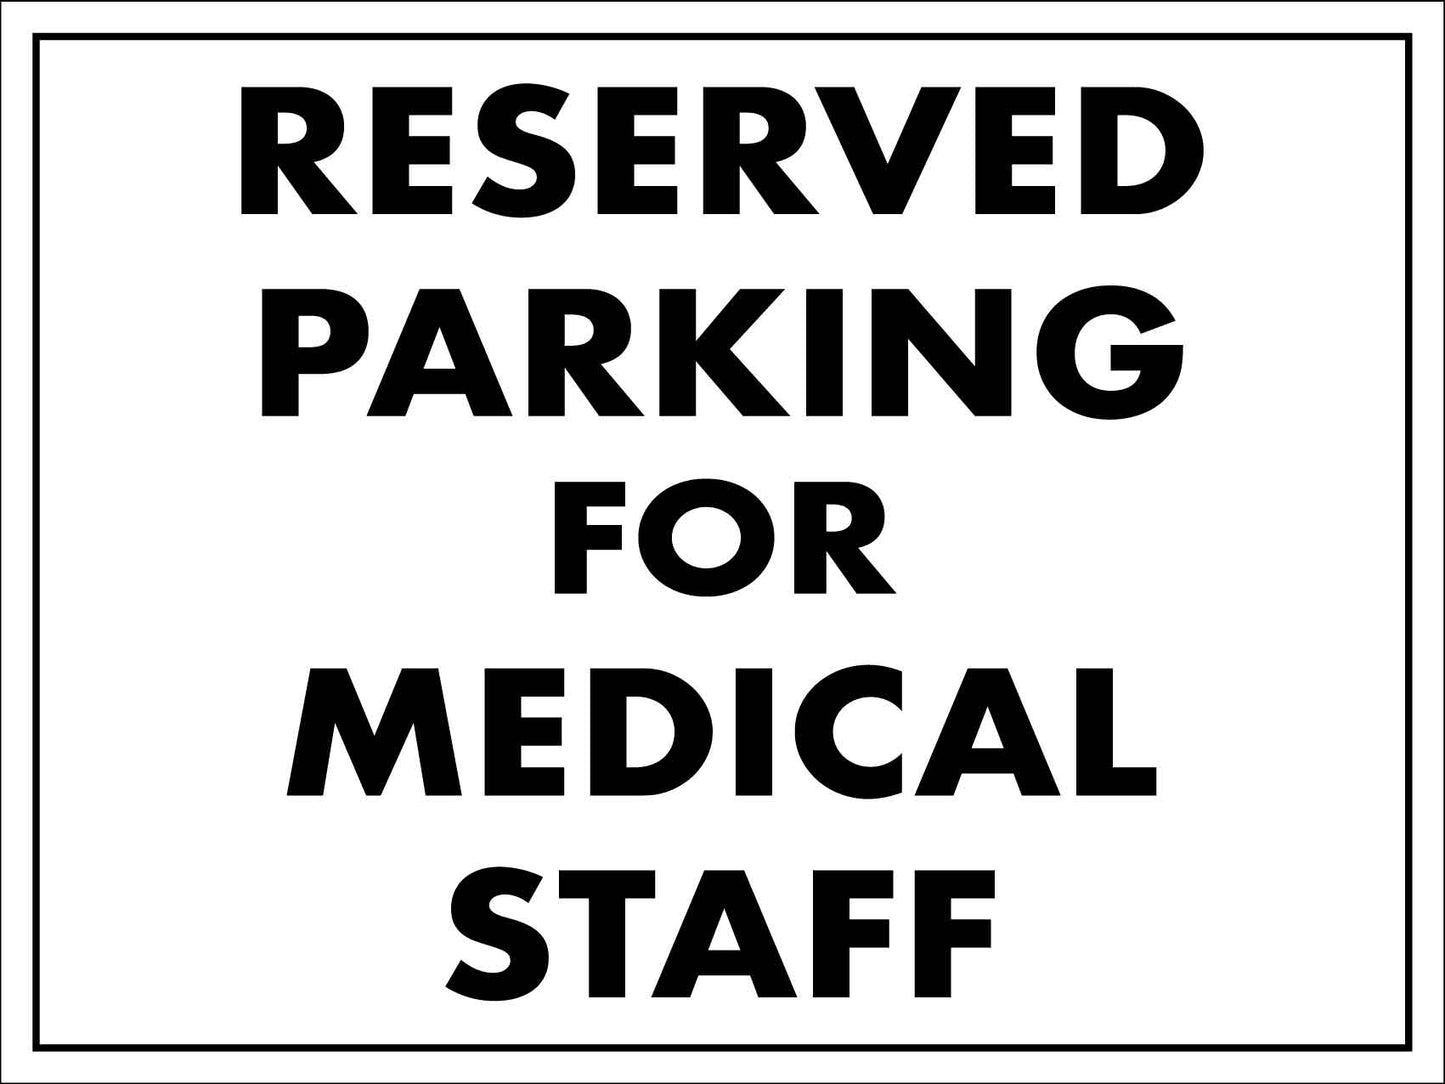 Reserved Parking For Medical Staff Sign